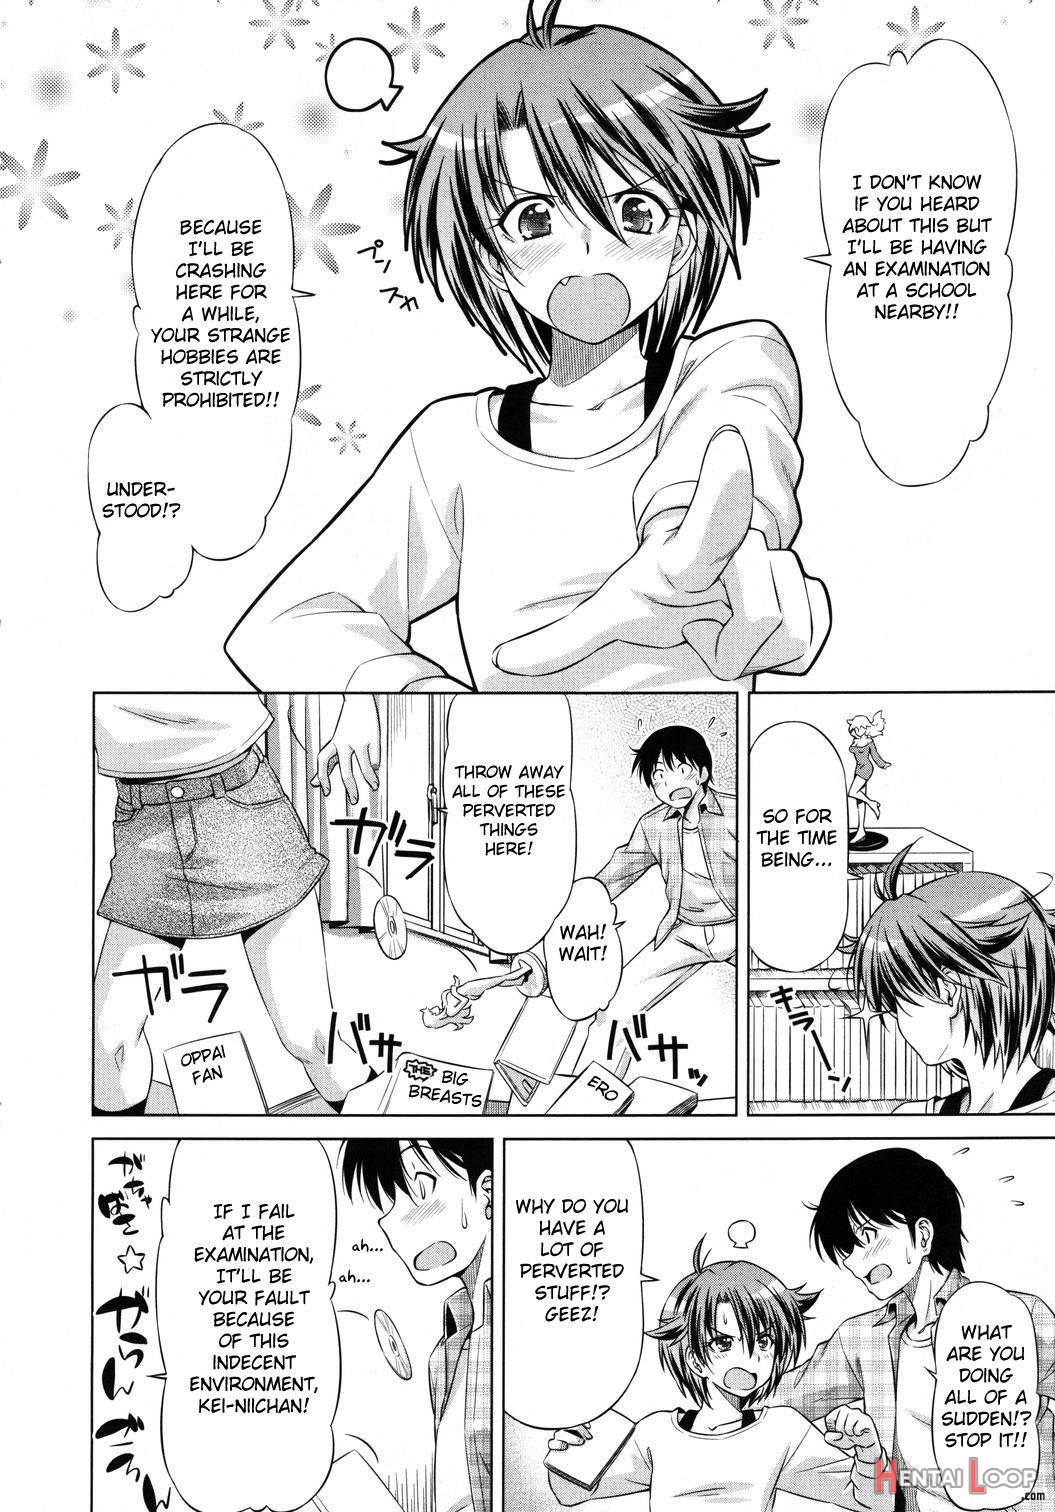 Rukino Versus Kei-niichan page 4